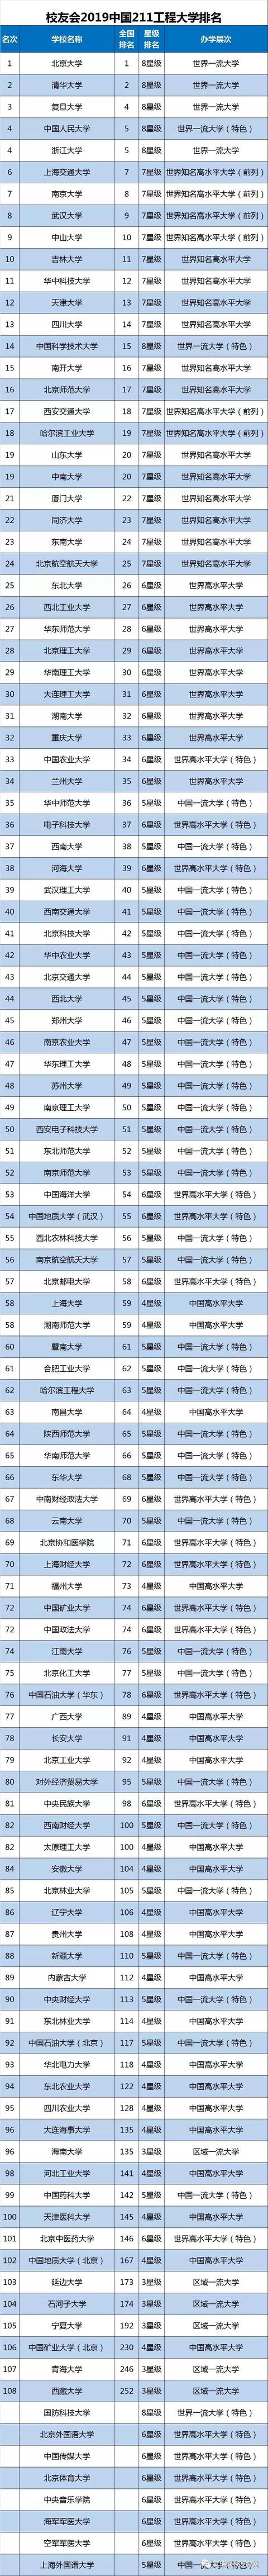 2019中国211工程大学排名